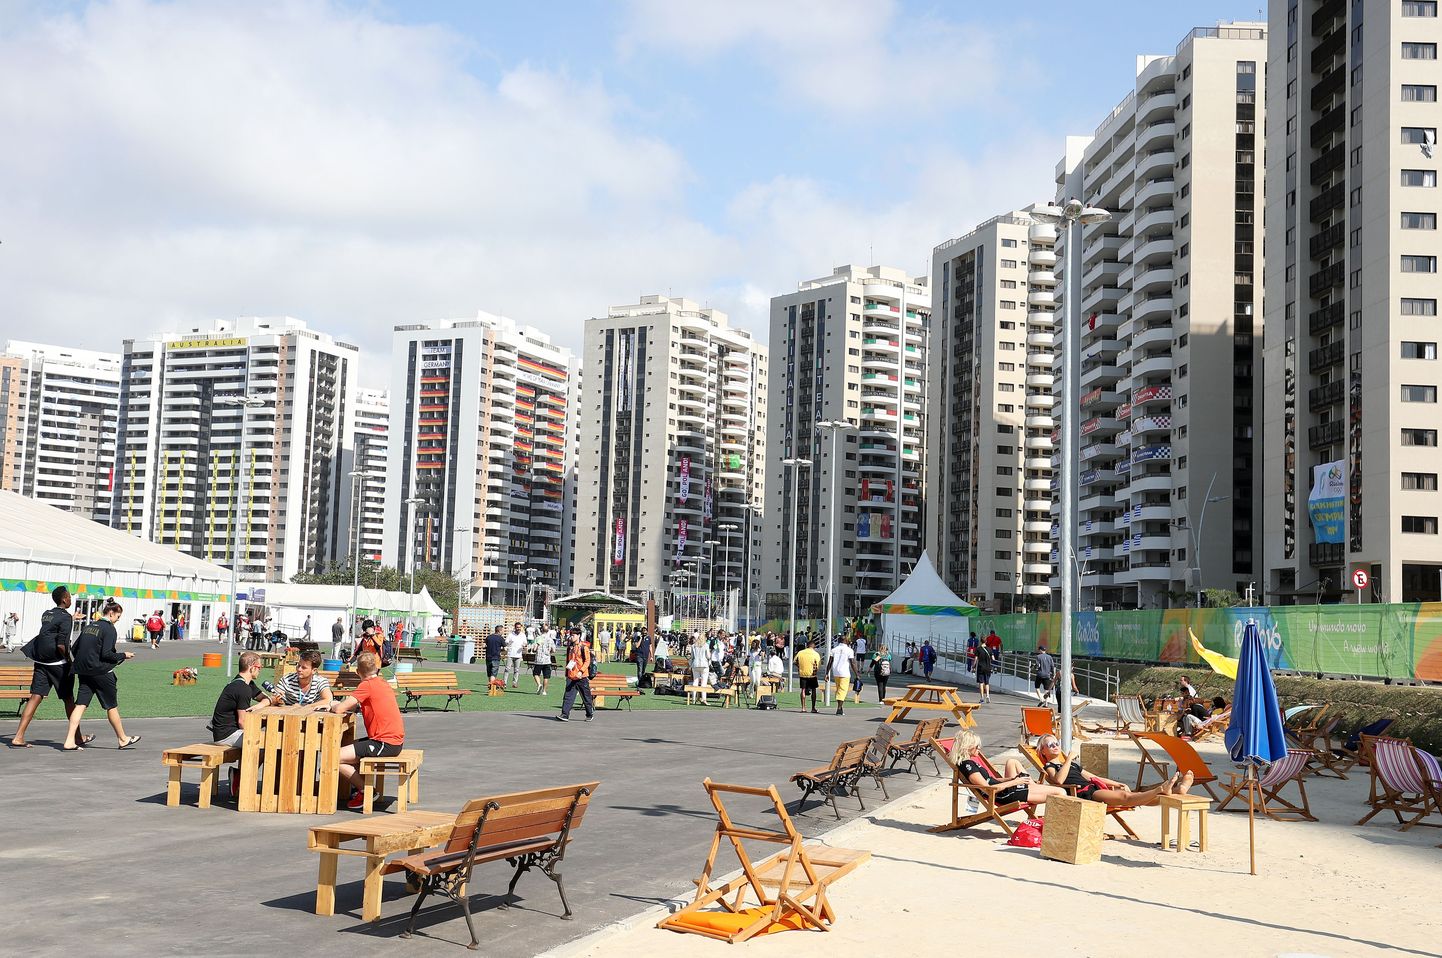 Rio olümpiaküla.